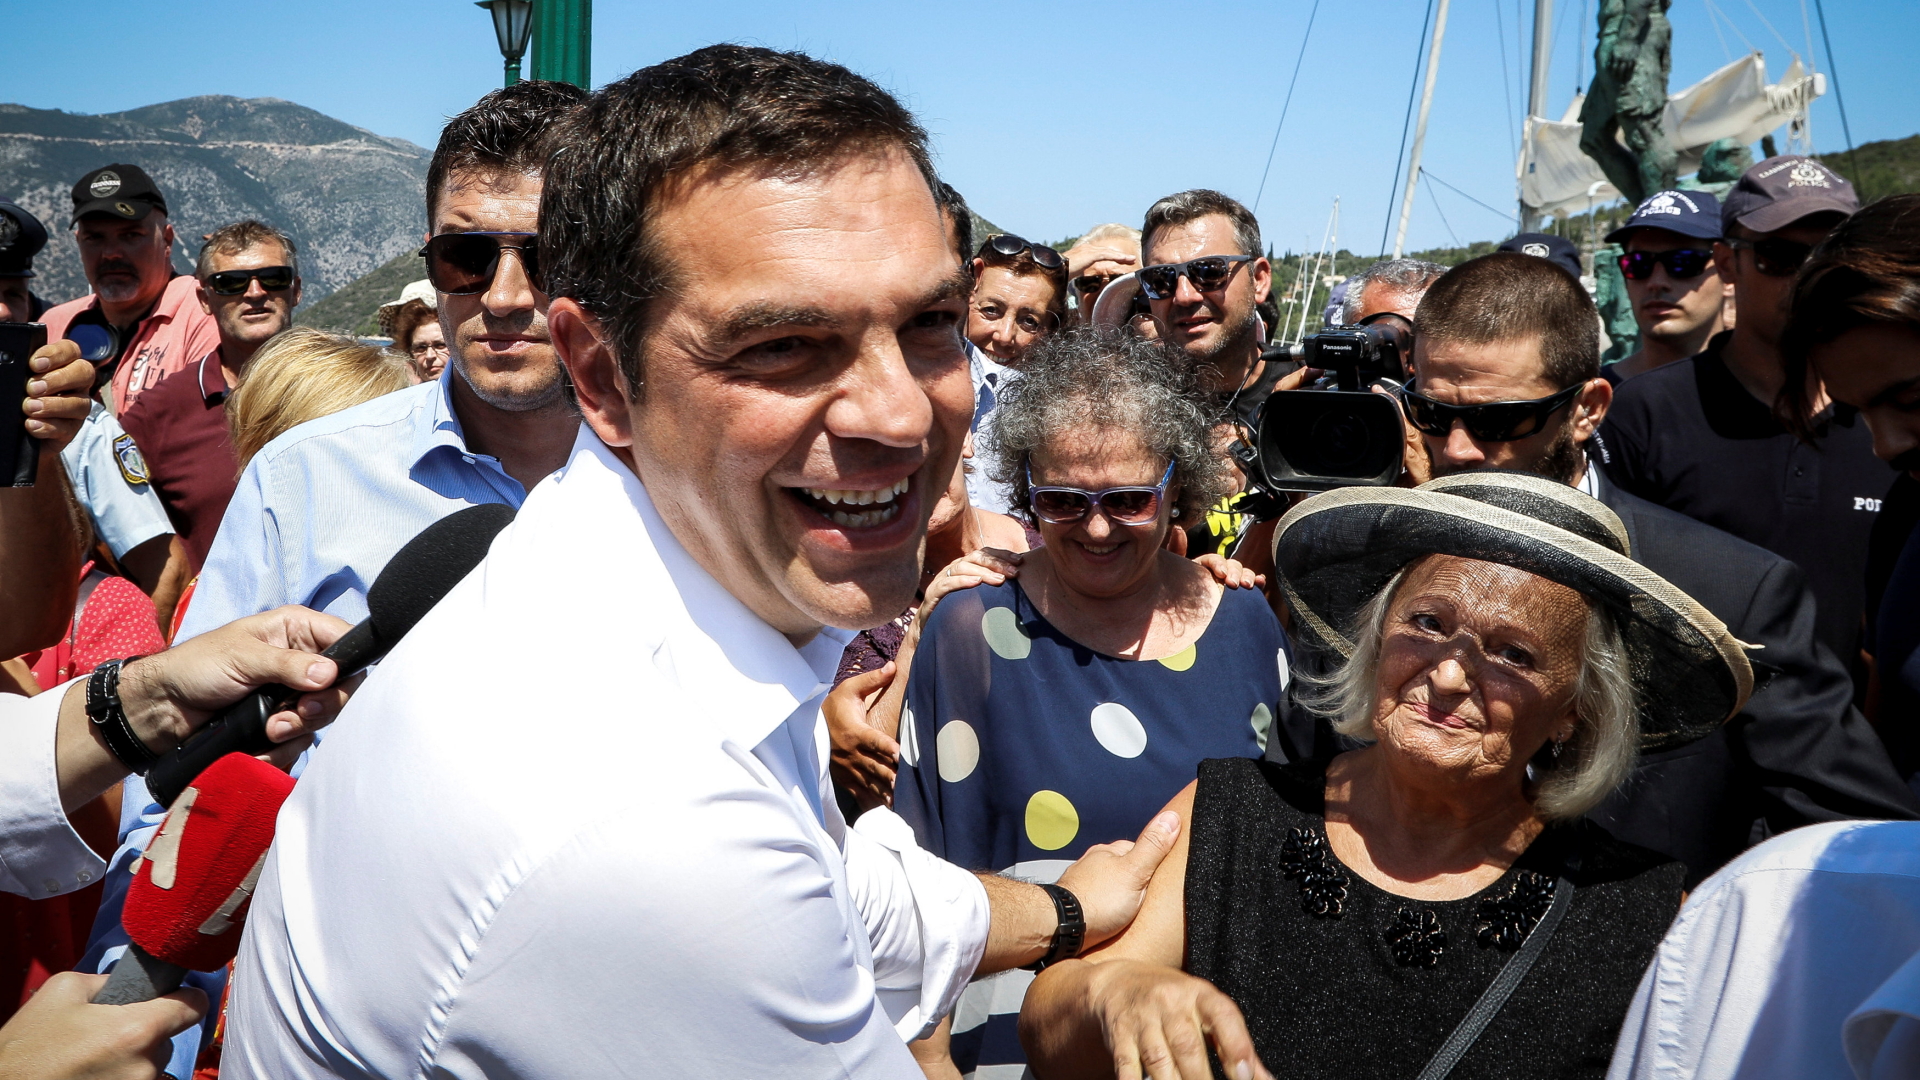 Griechenlands Regierungschef Tsipras lächelt in die Kamera, während er Einwohnern der Insel Ithaka die Hände schüttelt. | REUTERS